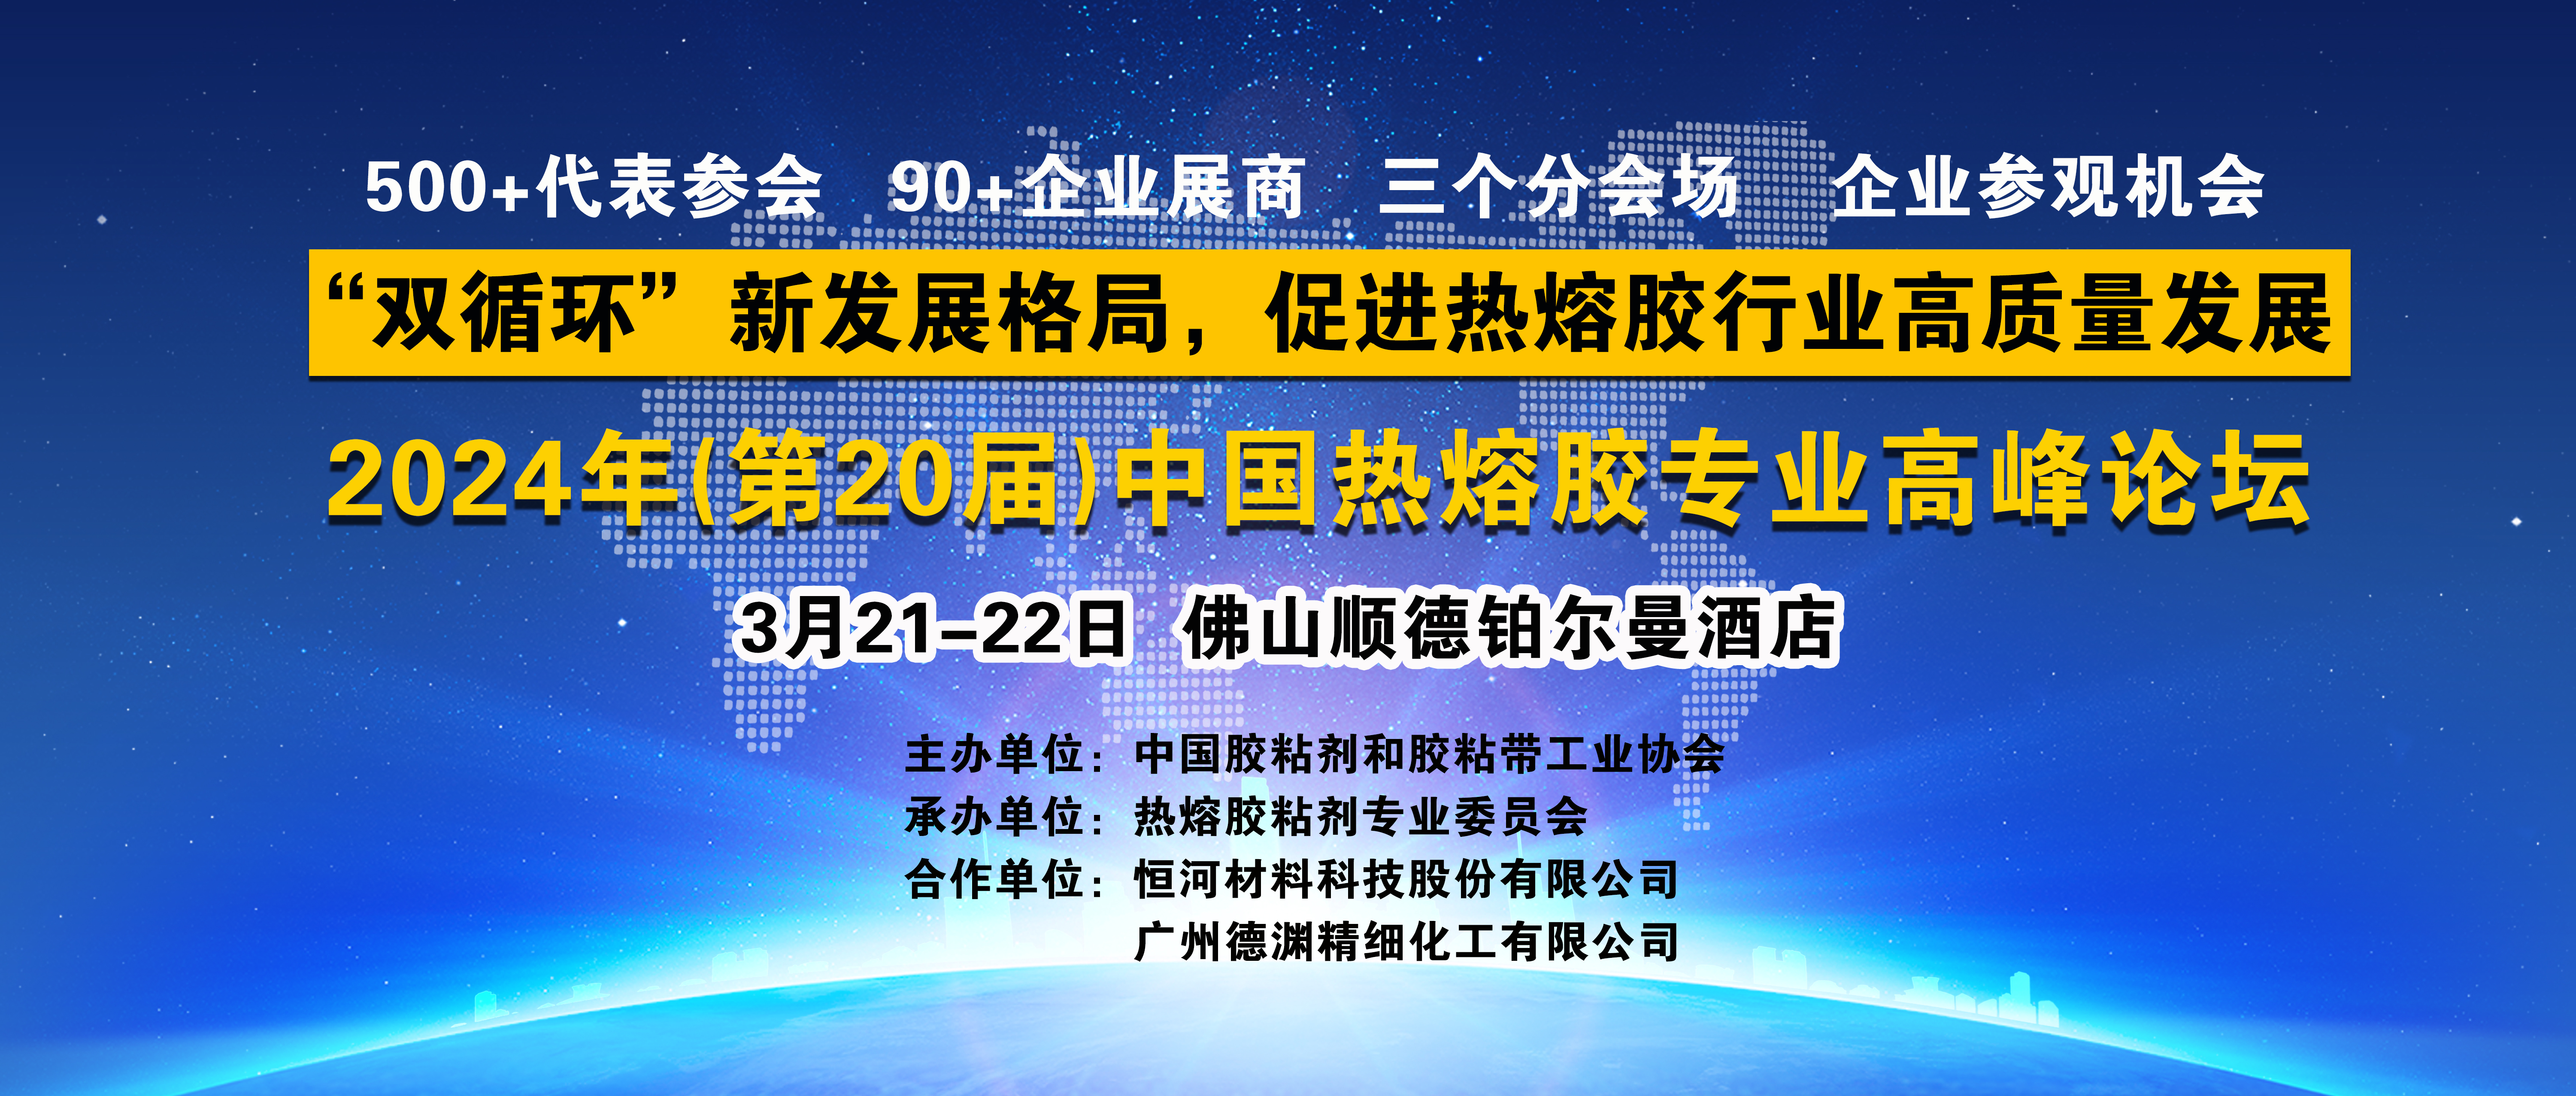 关于召开2024年(第20届)中国热熔胶专业高峰论坛的通知